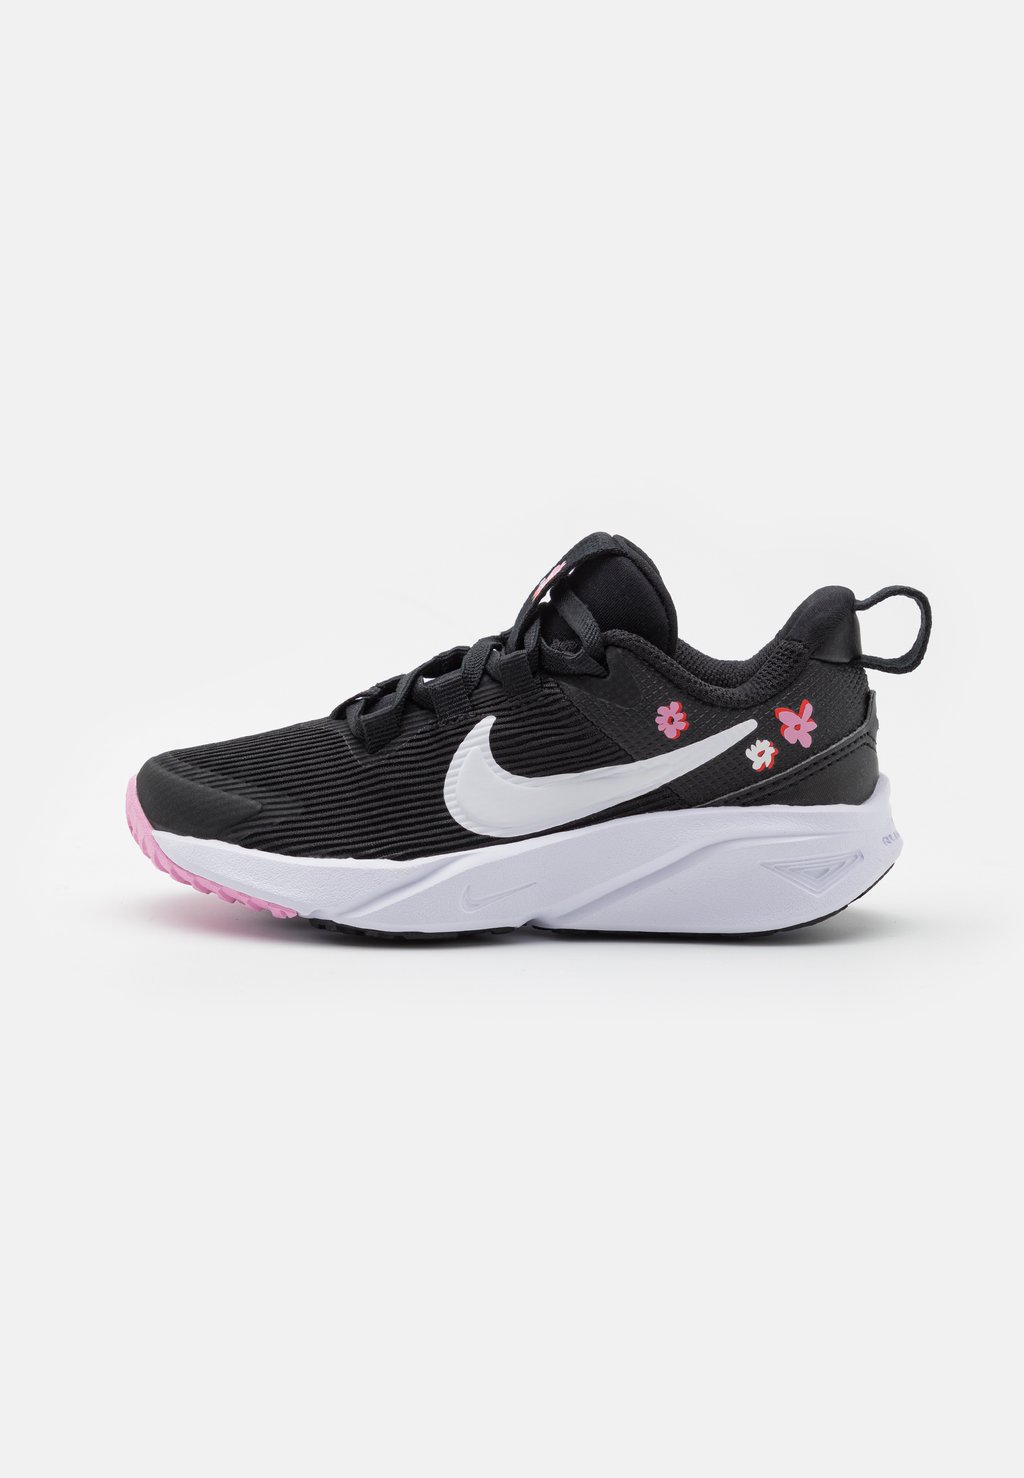 Кроссовки для соревнований Star Runner 4 Se Unisex Nike, цвет black/white/pink rise/picante red